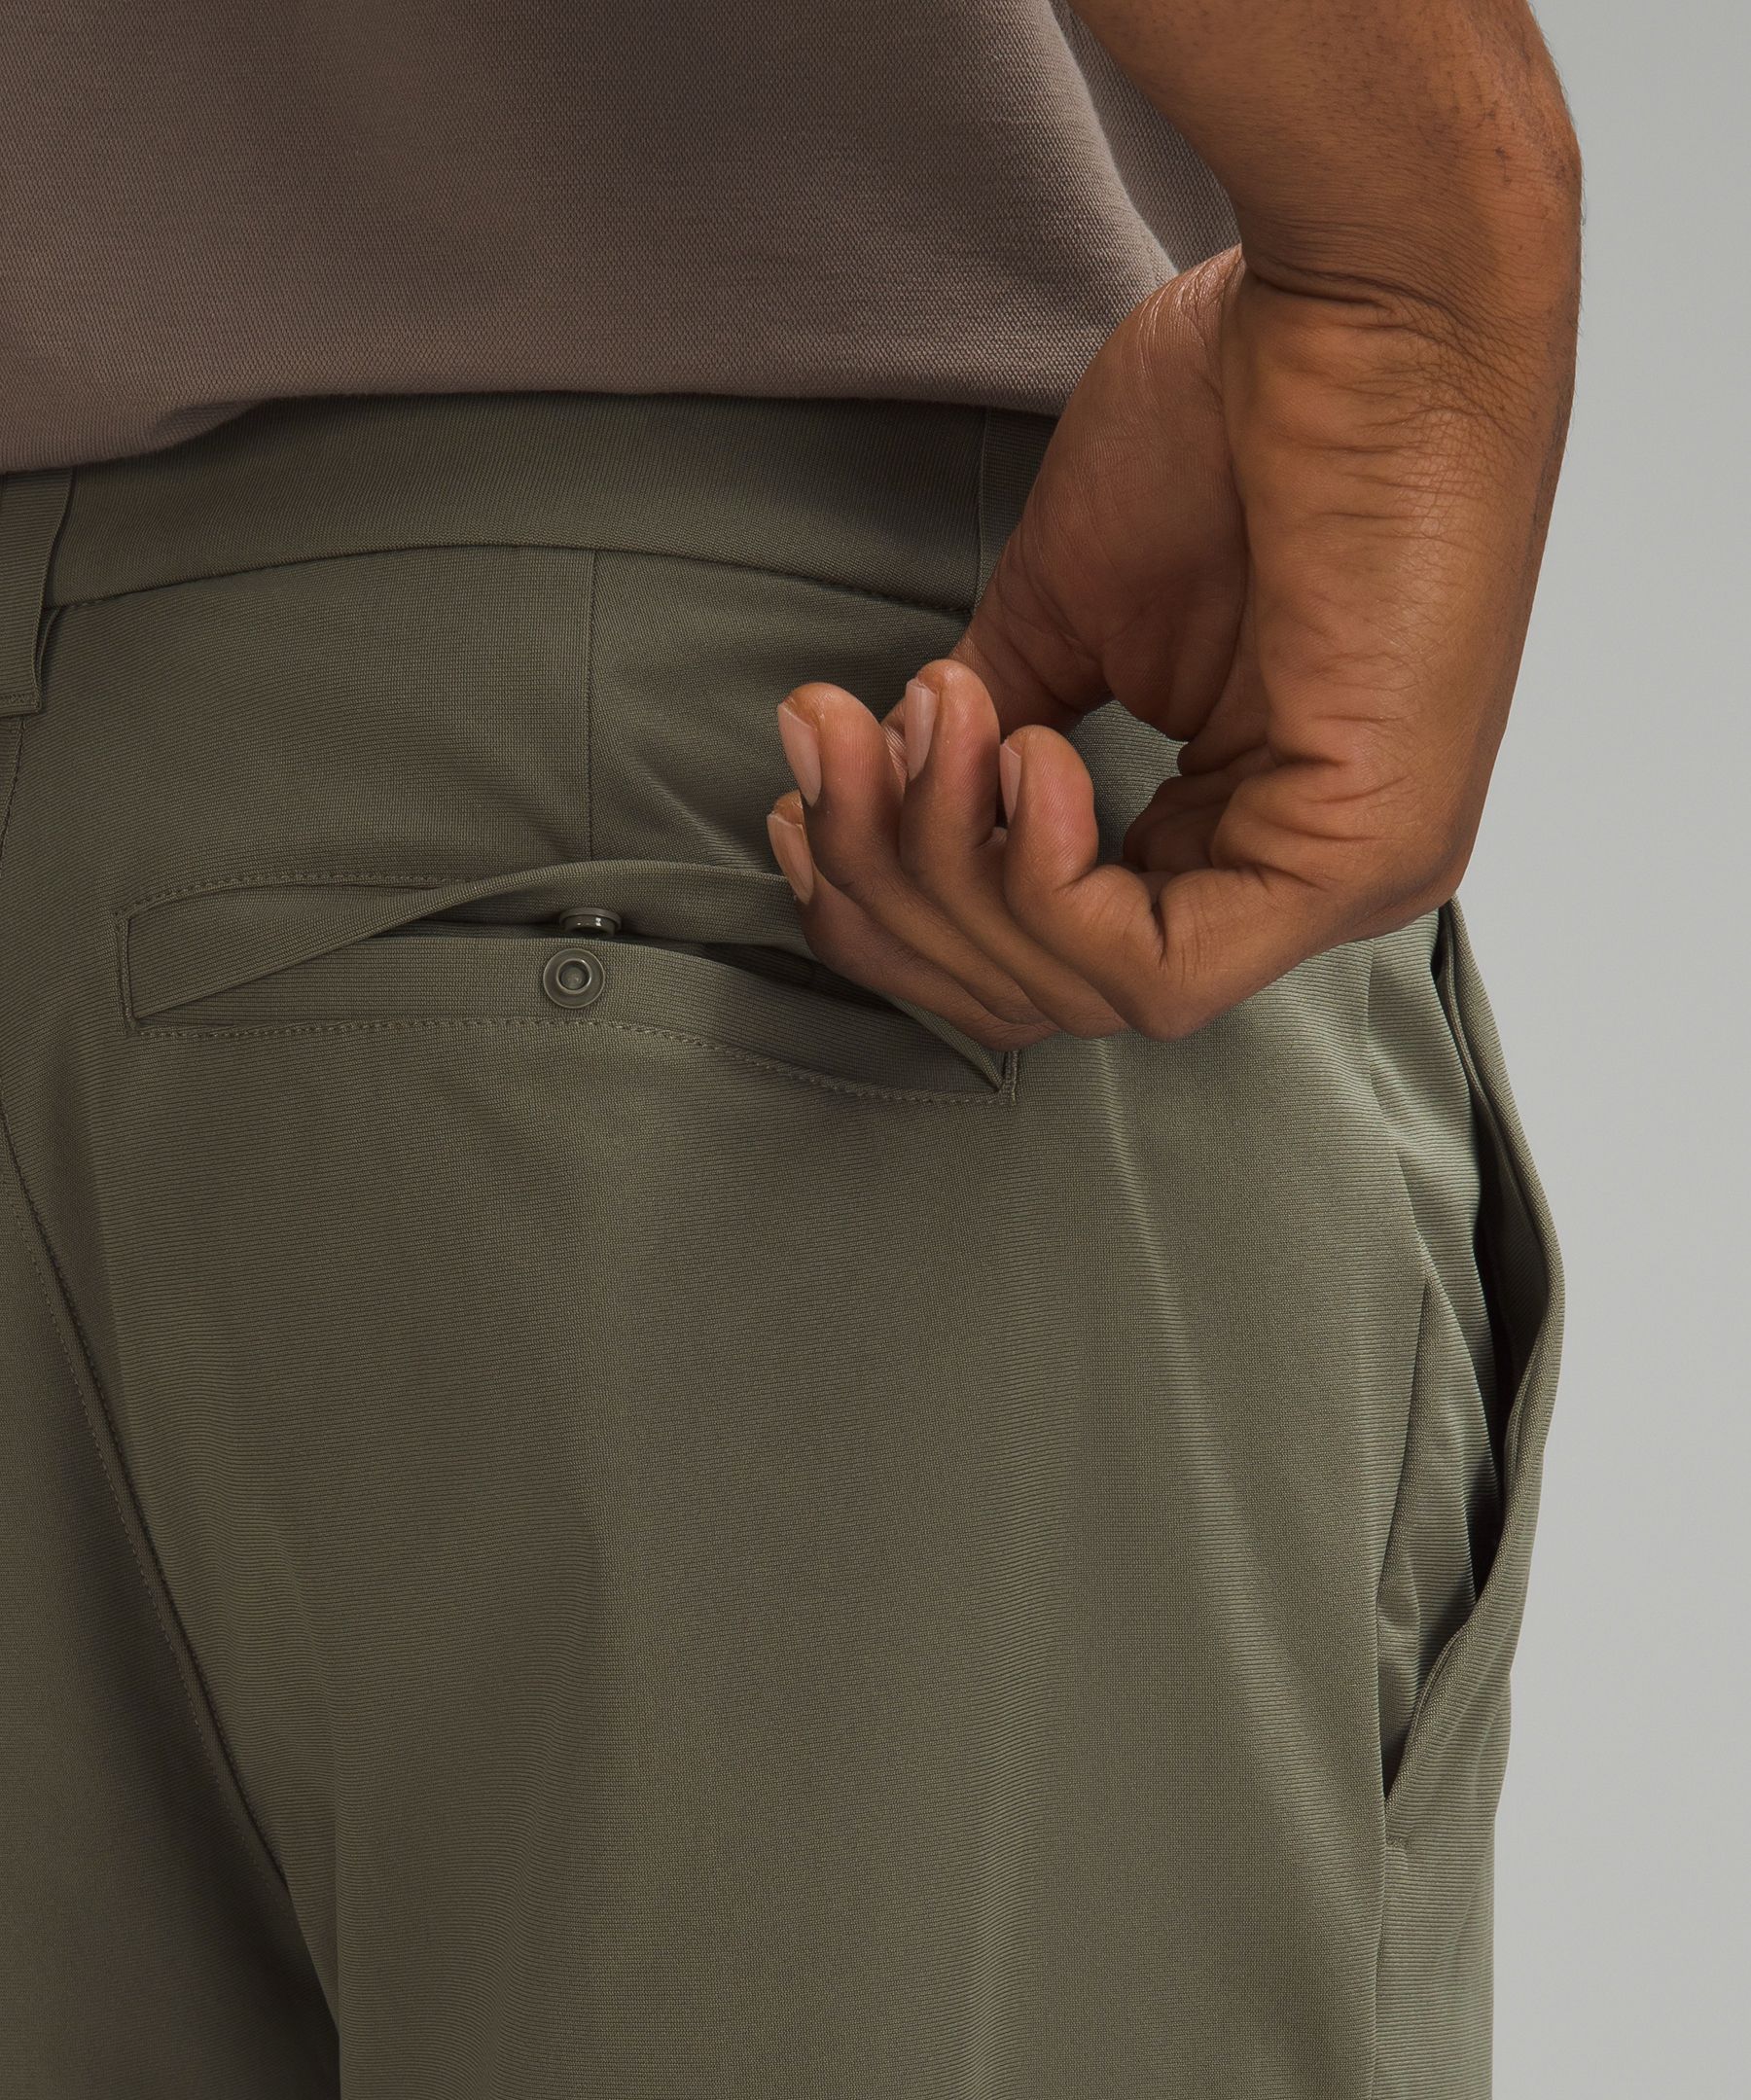 ABC Slim-Fit 5 Pocket Pant 30L *Warpstreme, Men's Trousers, lululemon